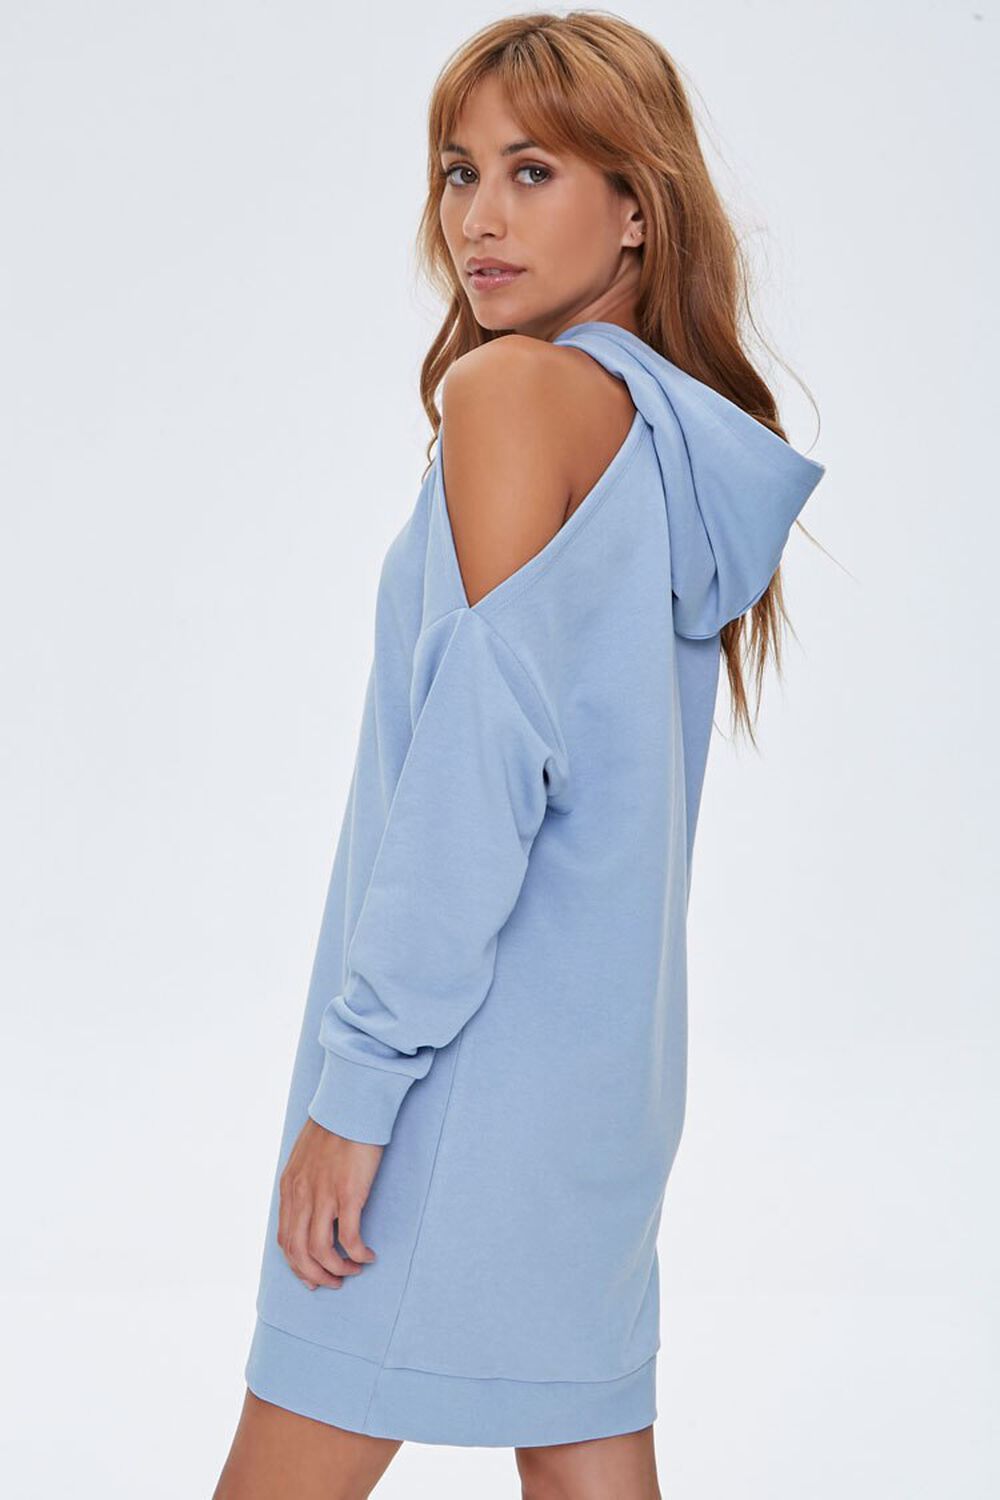 DUSTY BLUE Open-Shoulder Hoodie Dress, image 2